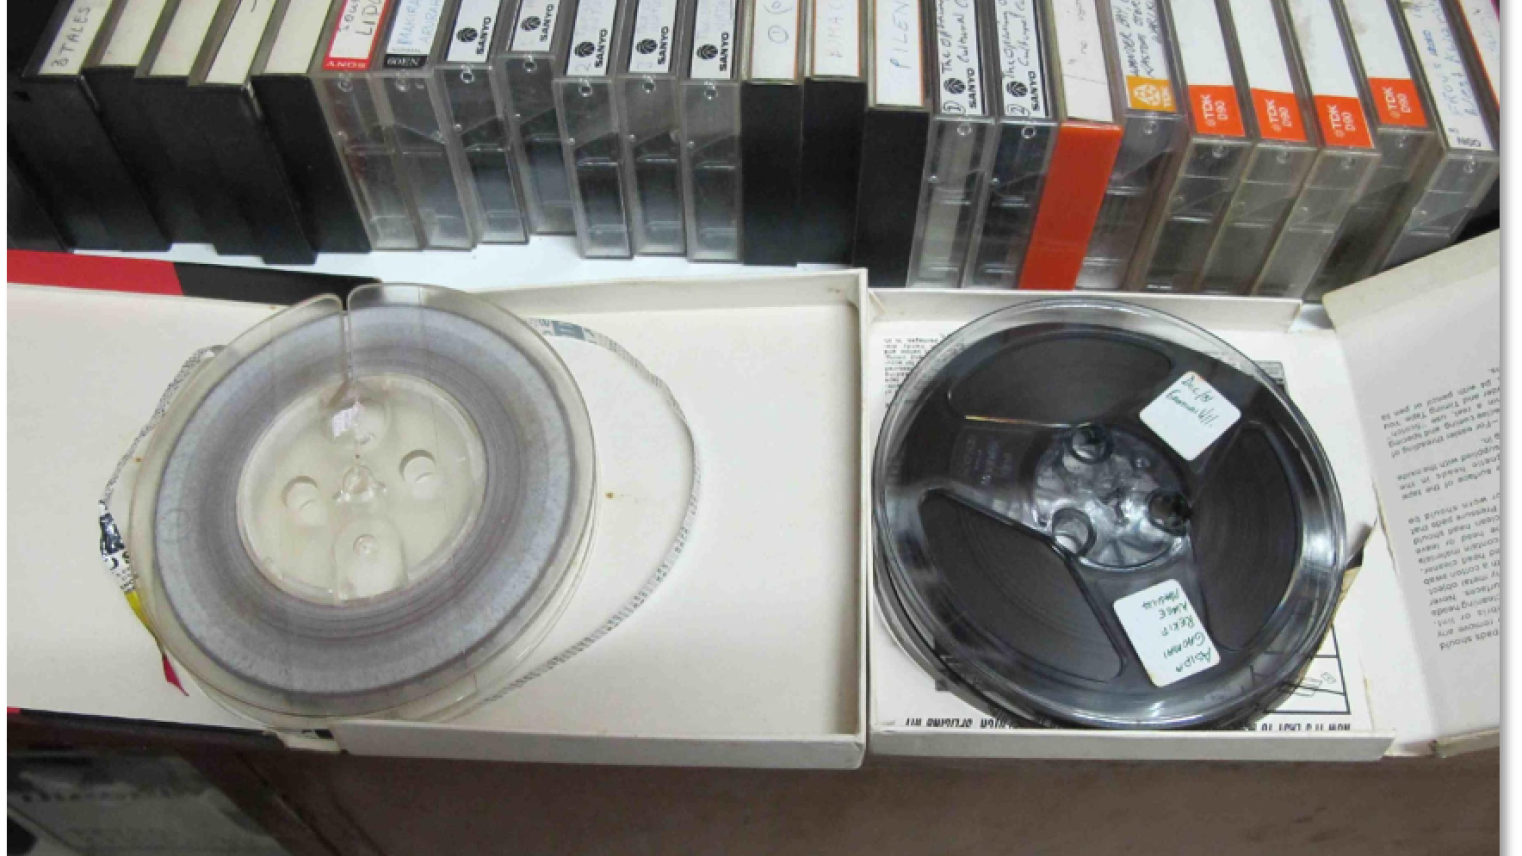 Old tapes for digitisation